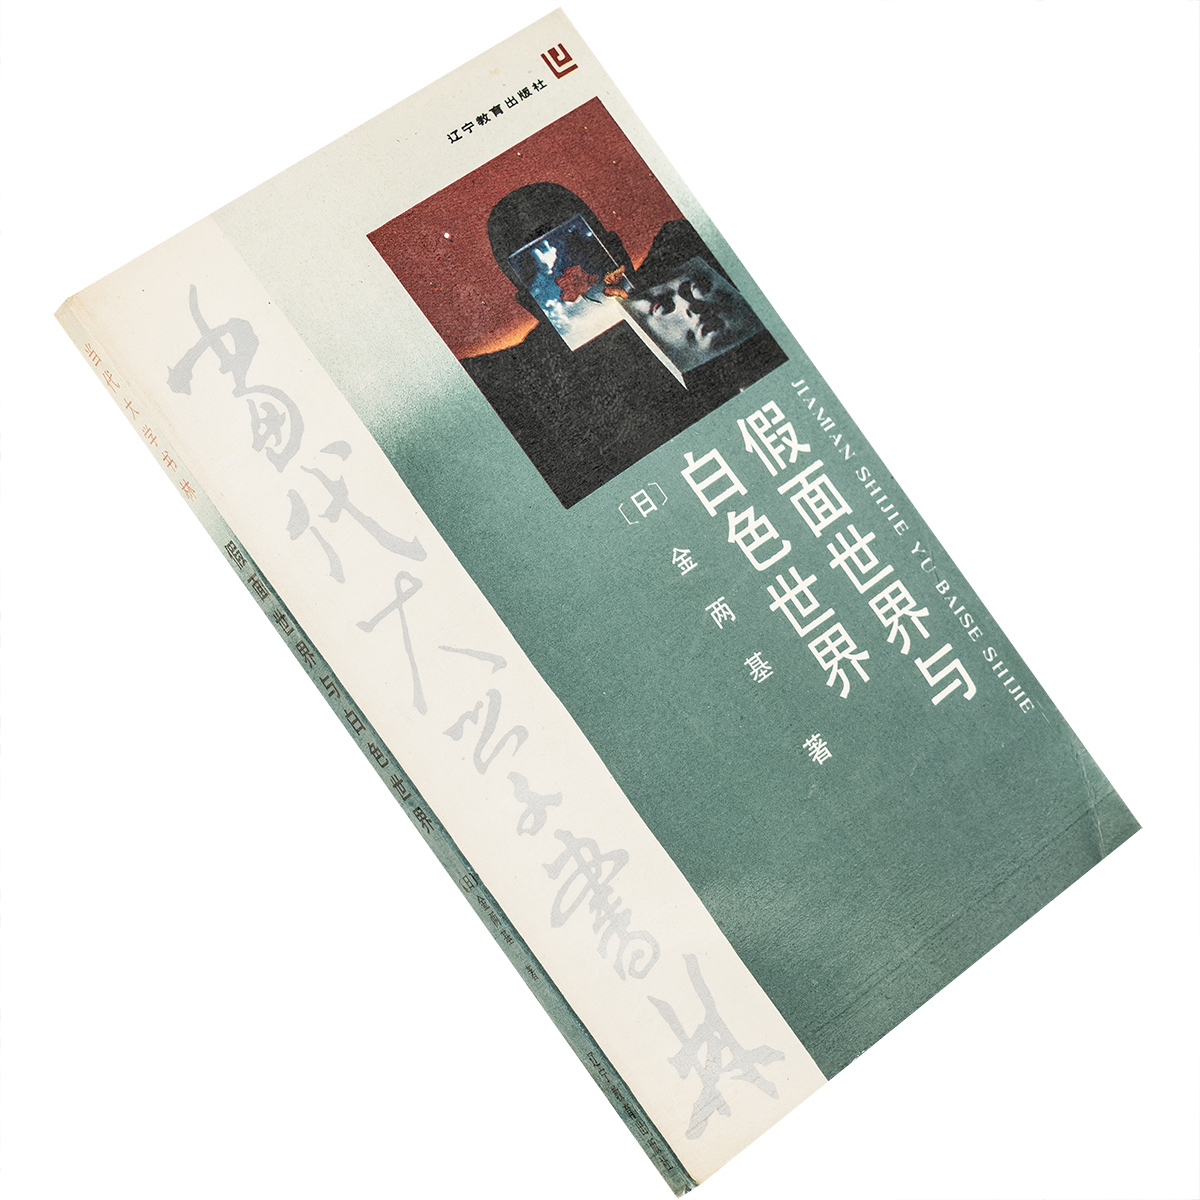 假面世界与白色世界 日本文化与朝鲜文化的比较 金两基 9787538208580 当代大学书林 辽宁教育出版社 正版书籍老版